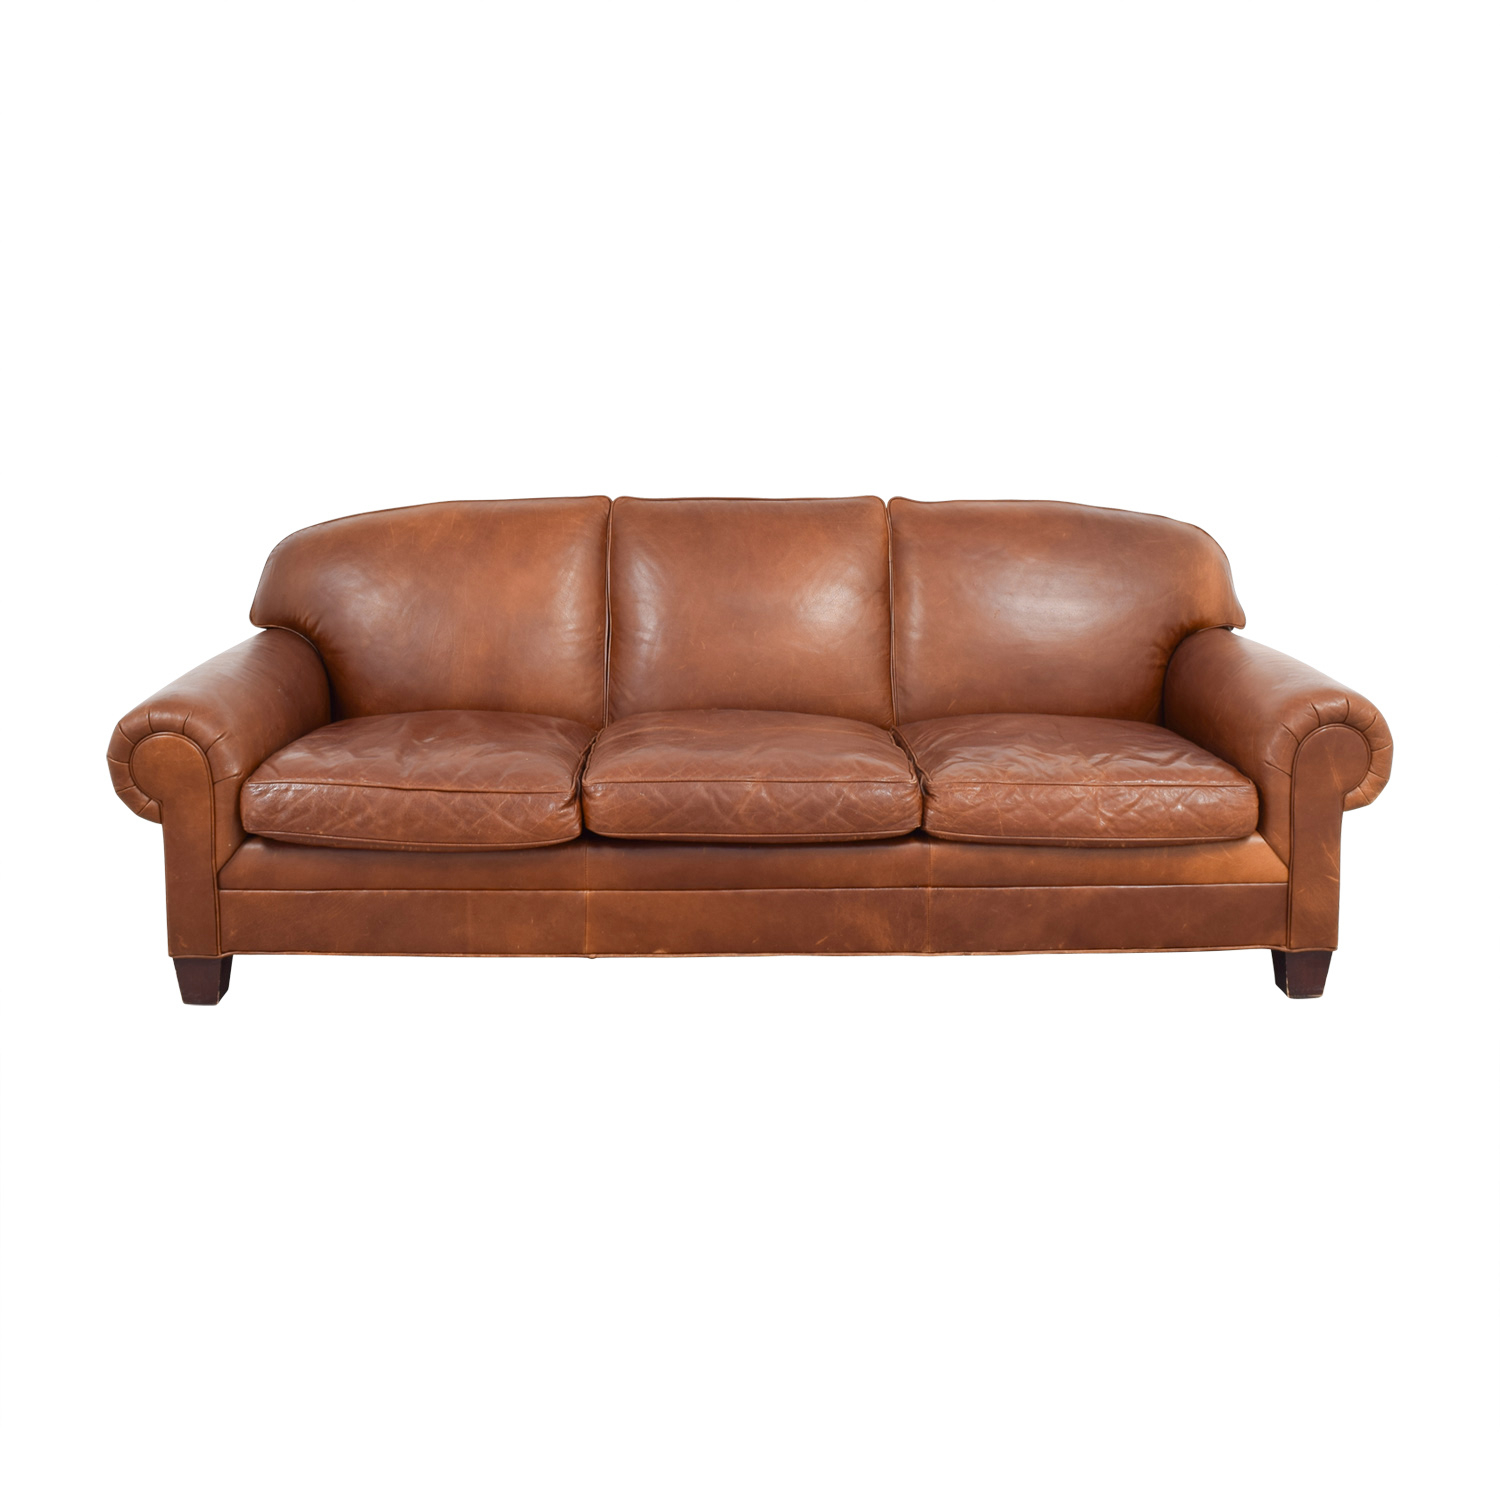 90% Off - Ralph Lauren Home Ralph Lauren Burnt Orange Leather Sofa / Sofas inside Ralph Lauren Furniture Sale